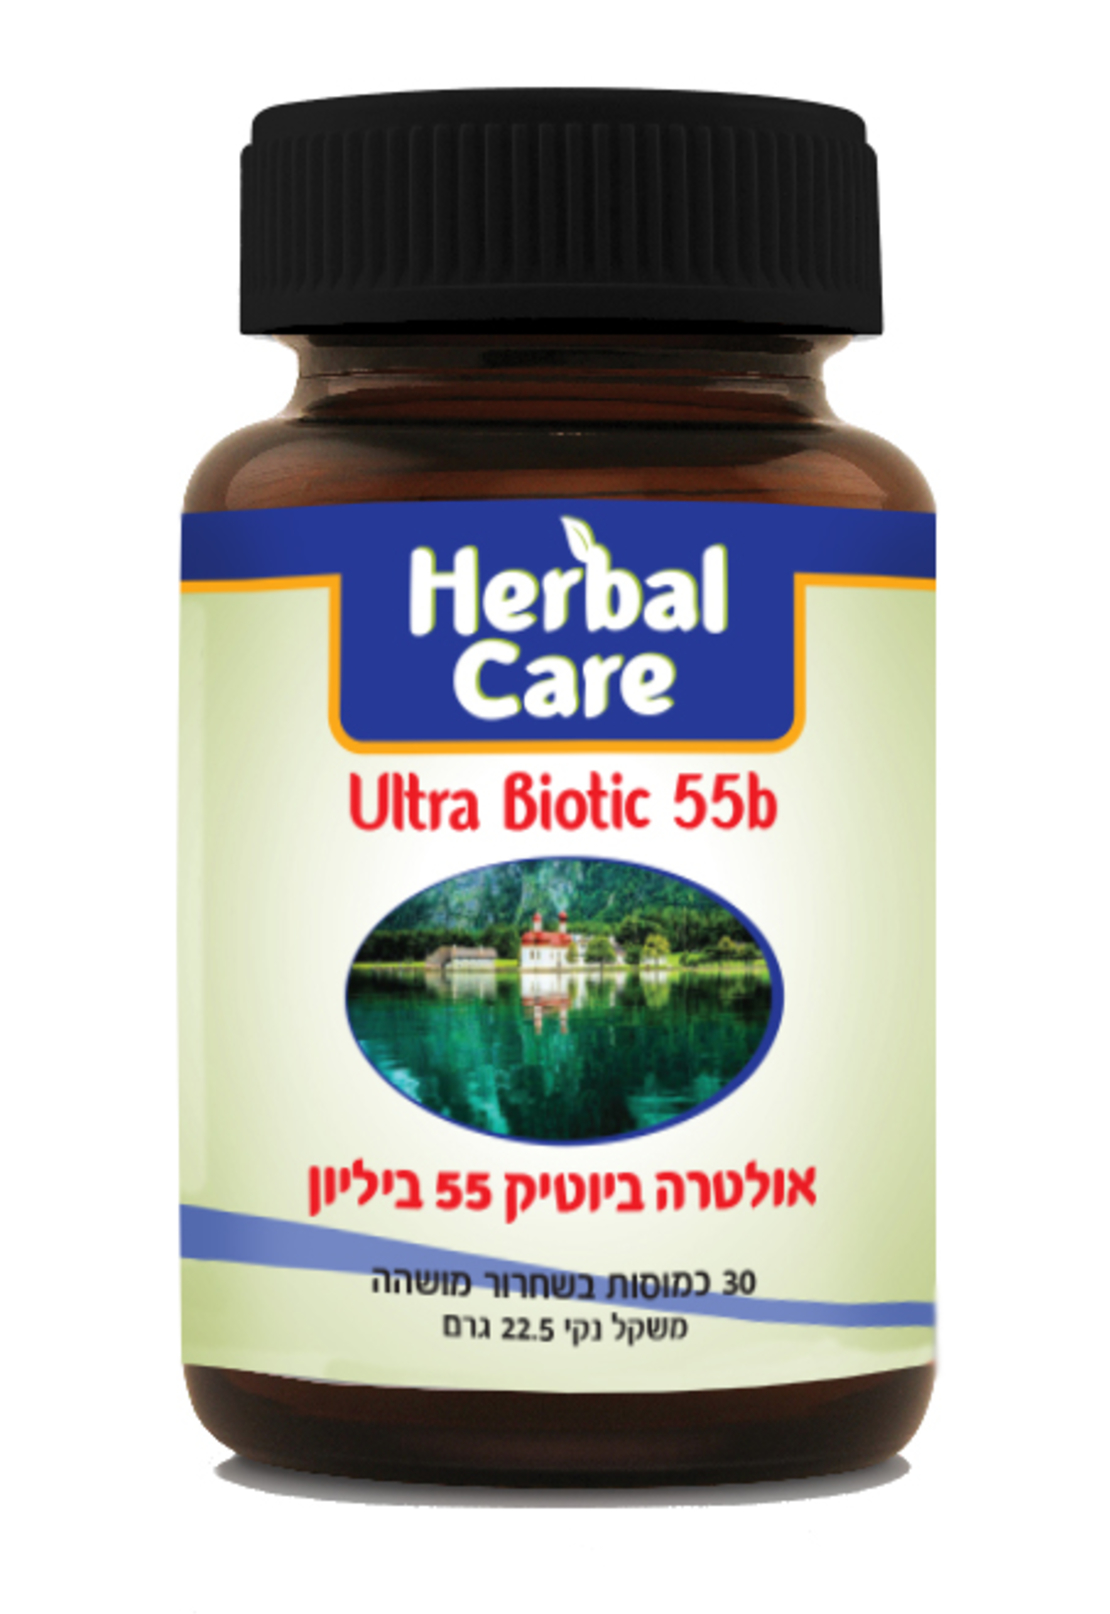 הרבל קר | אולטרה ביוטיק Herbal Care | Ultra Biotic